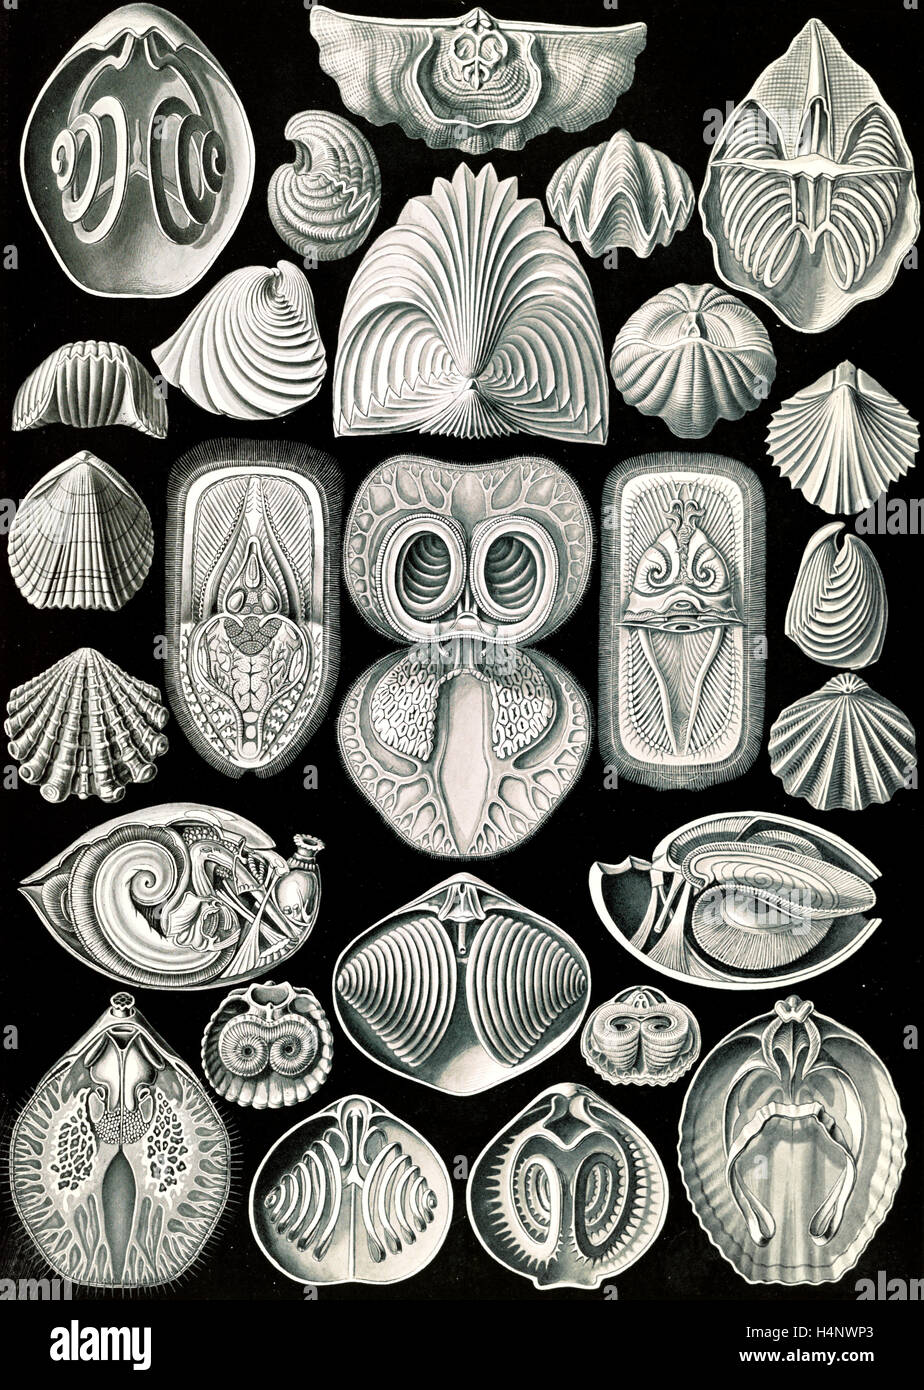 L'illustration montre les animaux marins. Spirobranchia. - Spiralkiemer, 1 Feuille d'impression photomécanique : ; 36 x 26 cm., 1904. Banque D'Images